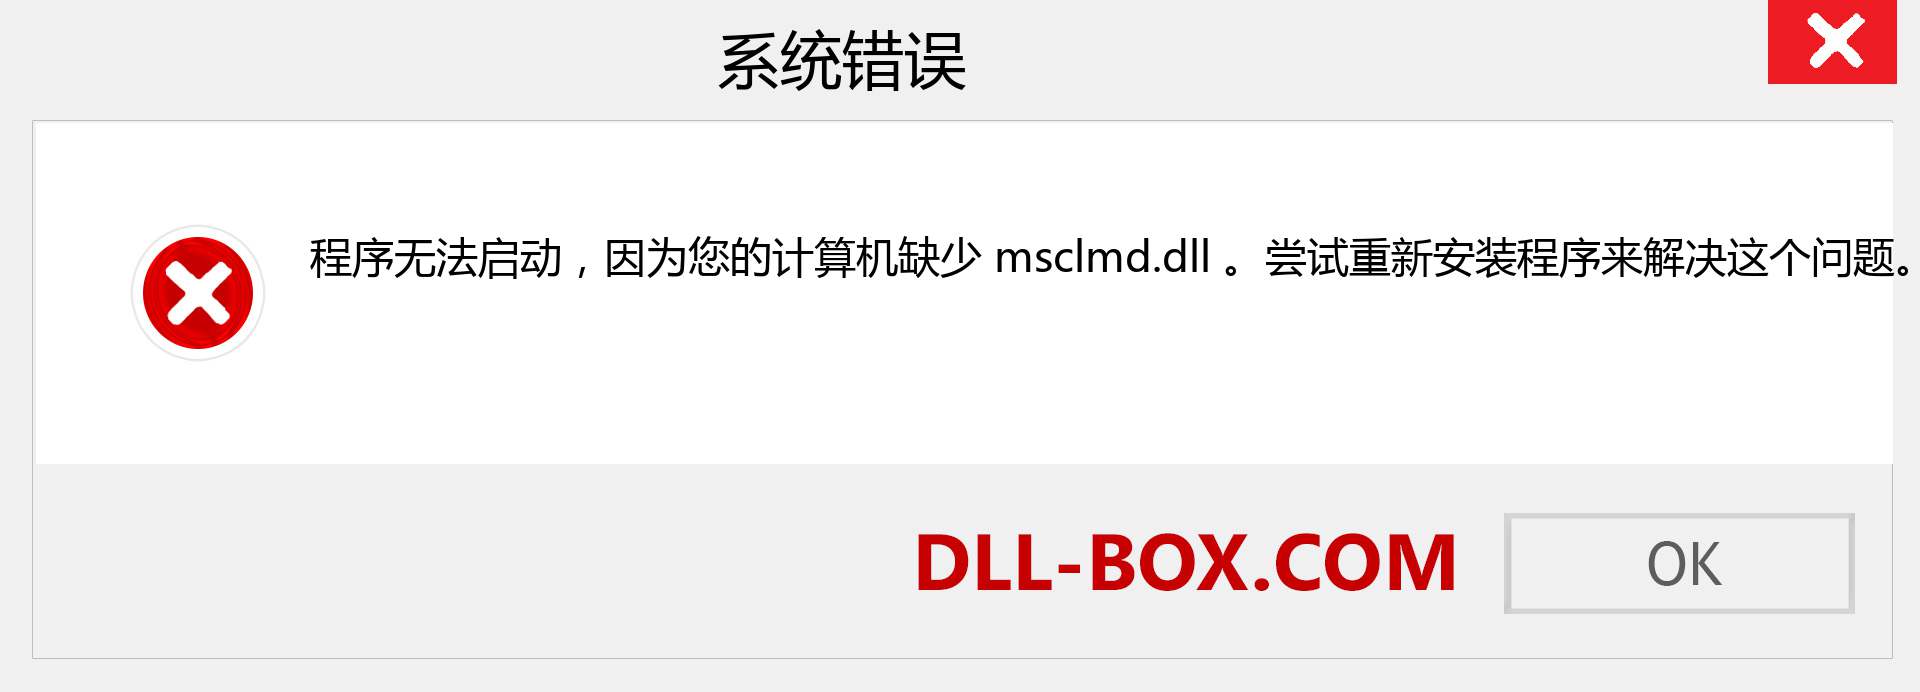 msclmd.dll 文件丢失？。 适用于 Windows 7、8、10 的下载 - 修复 Windows、照片、图像上的 msclmd dll 丢失错误